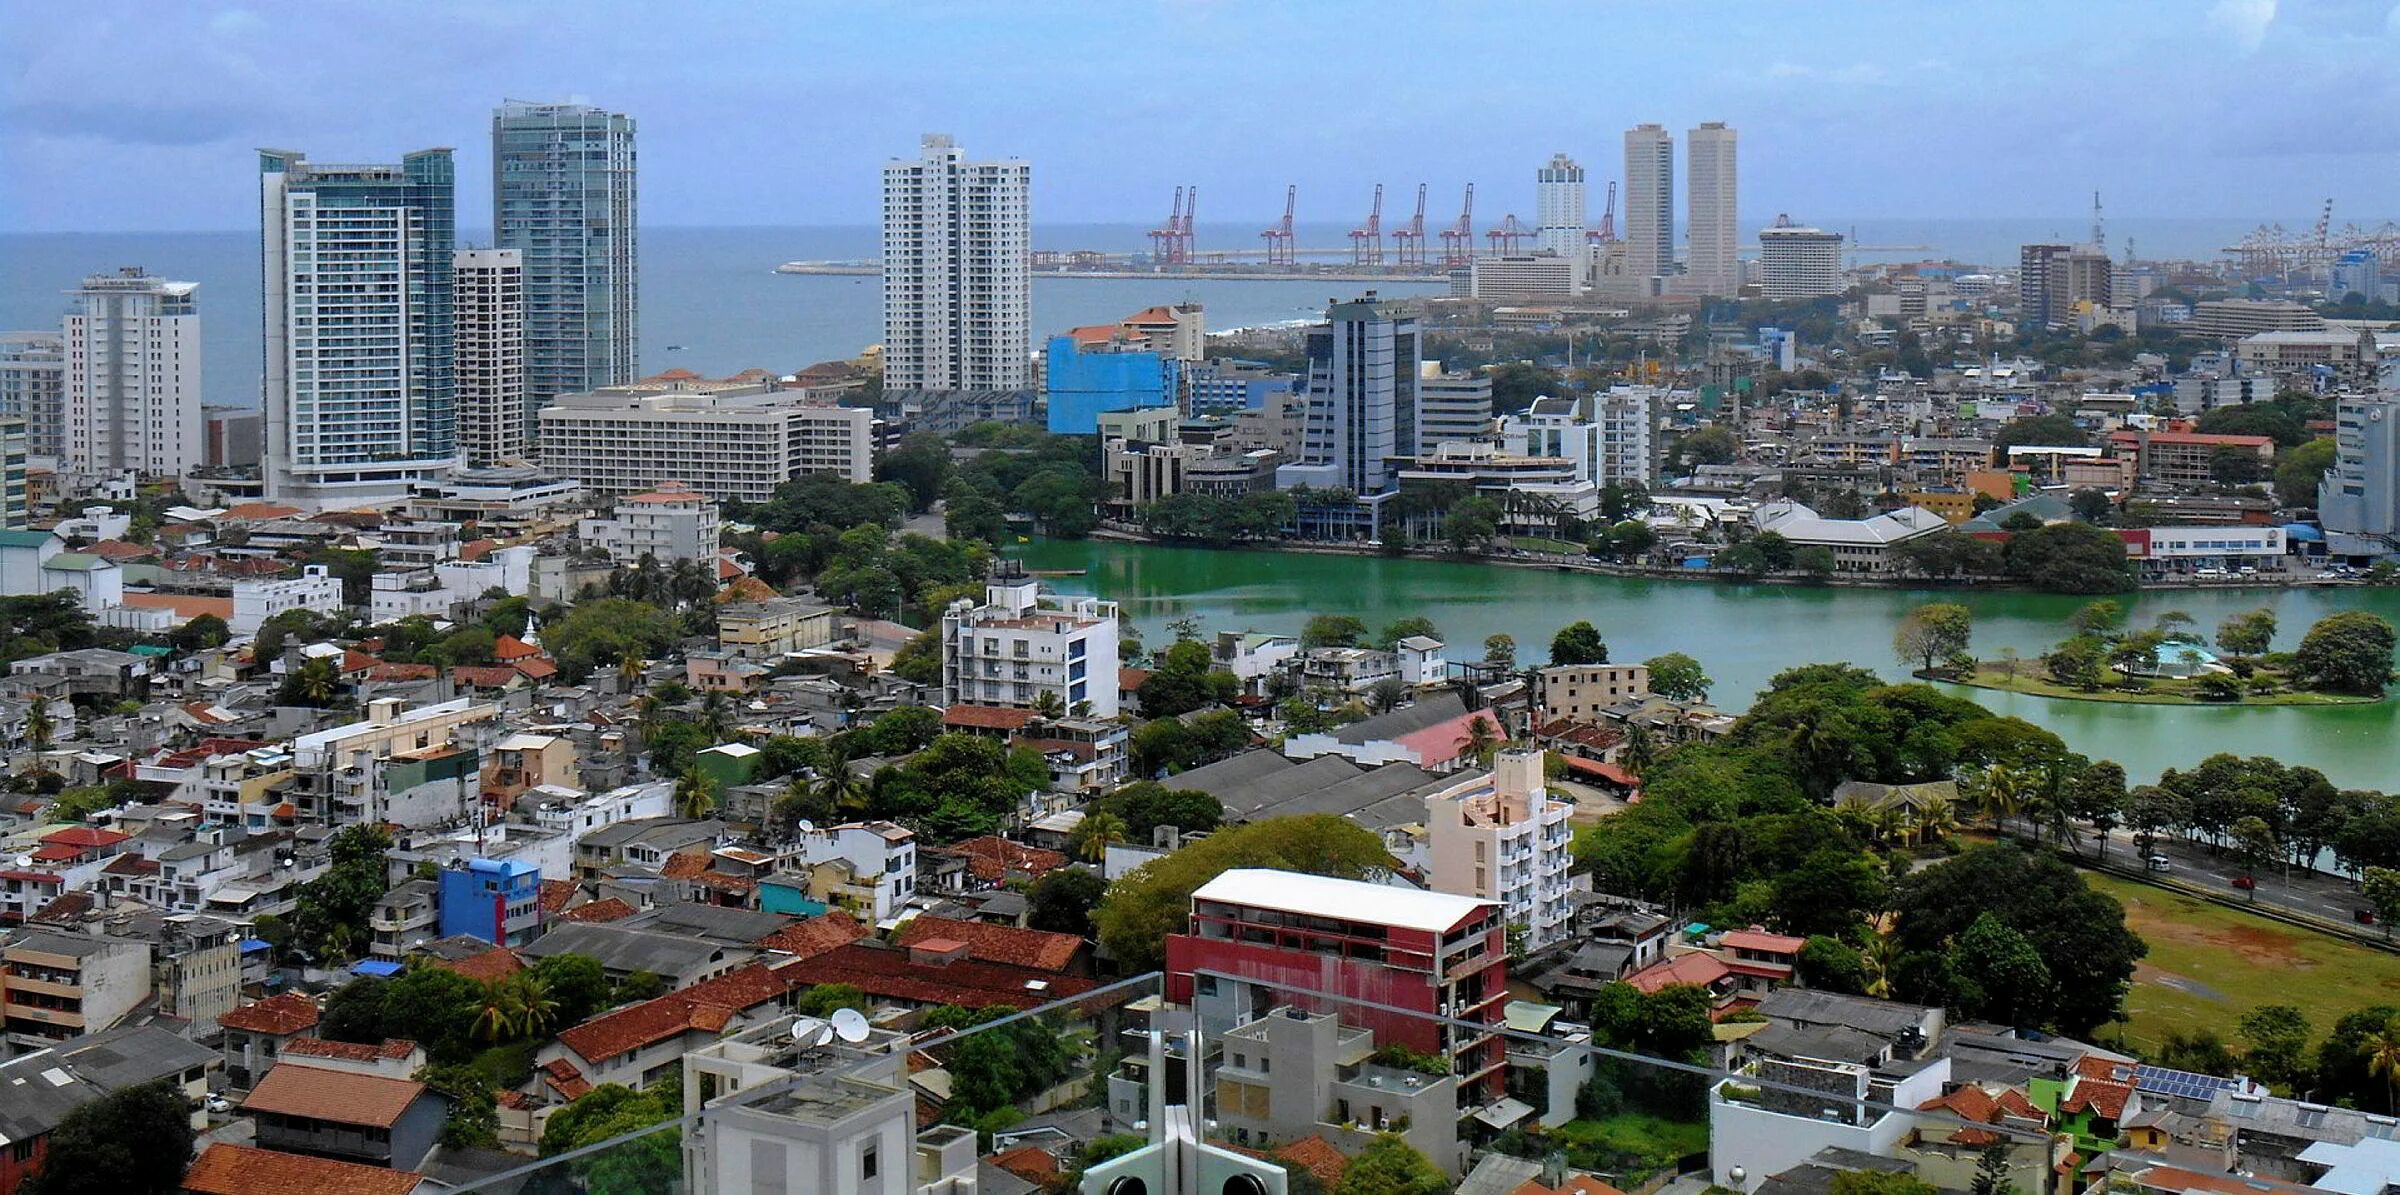 Порт в шри ланке. Шри-Джаяварденепура-котте столица. Коломбо Шри Ланка. Шри Ланка столица Коломбо. Морской порт Коломбо Шри Ланка.